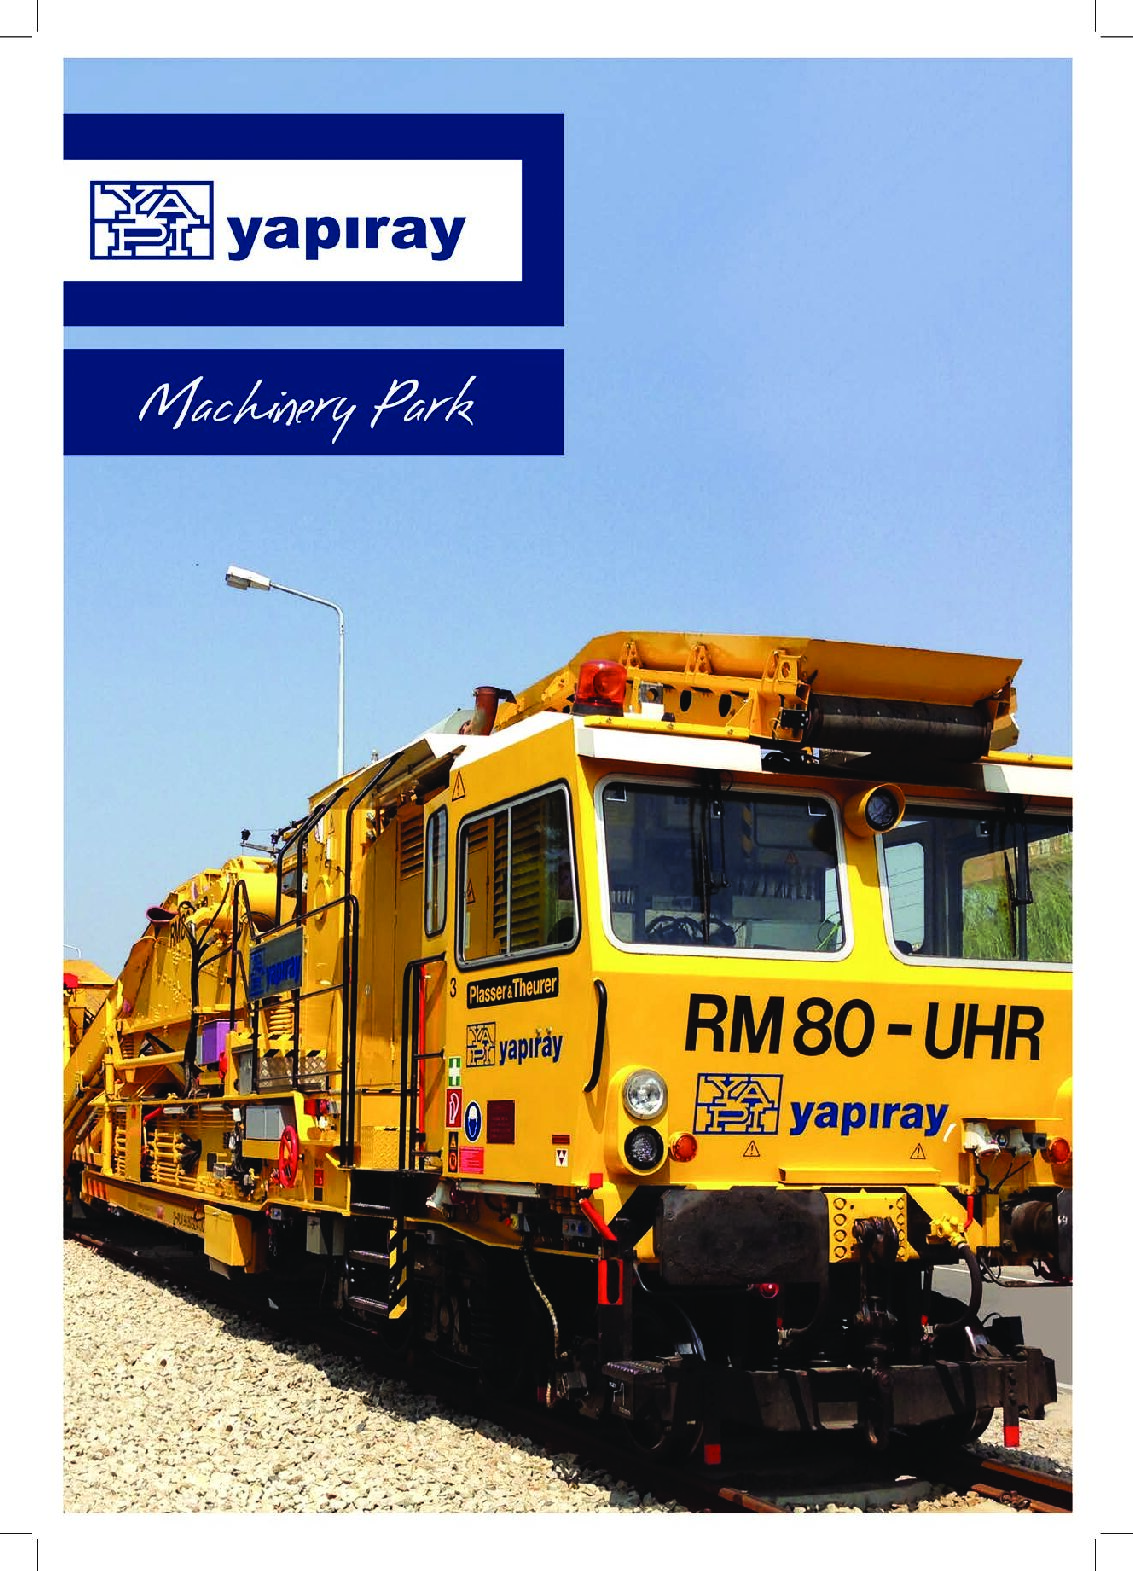 YAPIRAY – Machinery Park